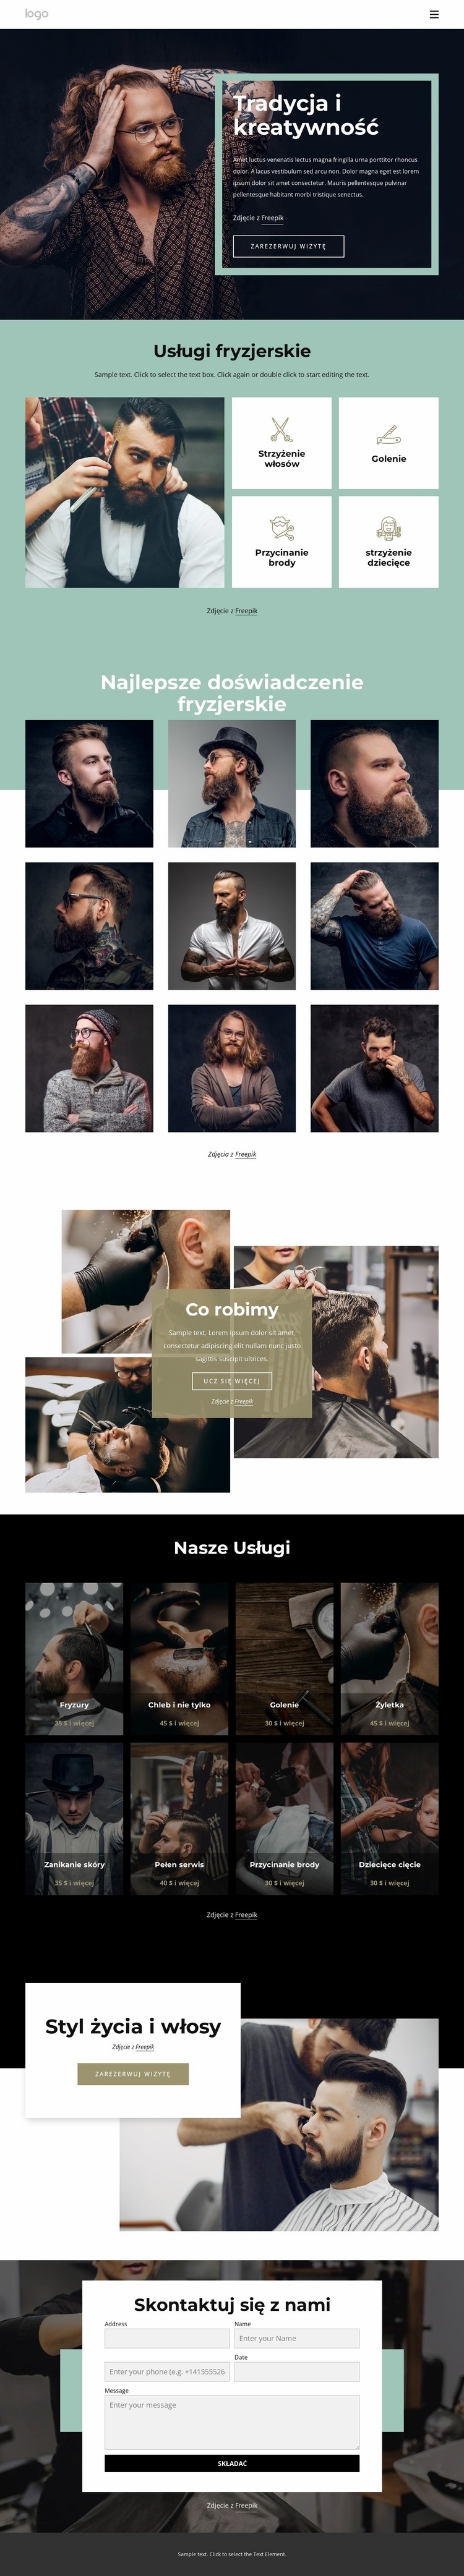 Ogólnodostępny salon fryzjerski Szablony do tworzenia witryn internetowych